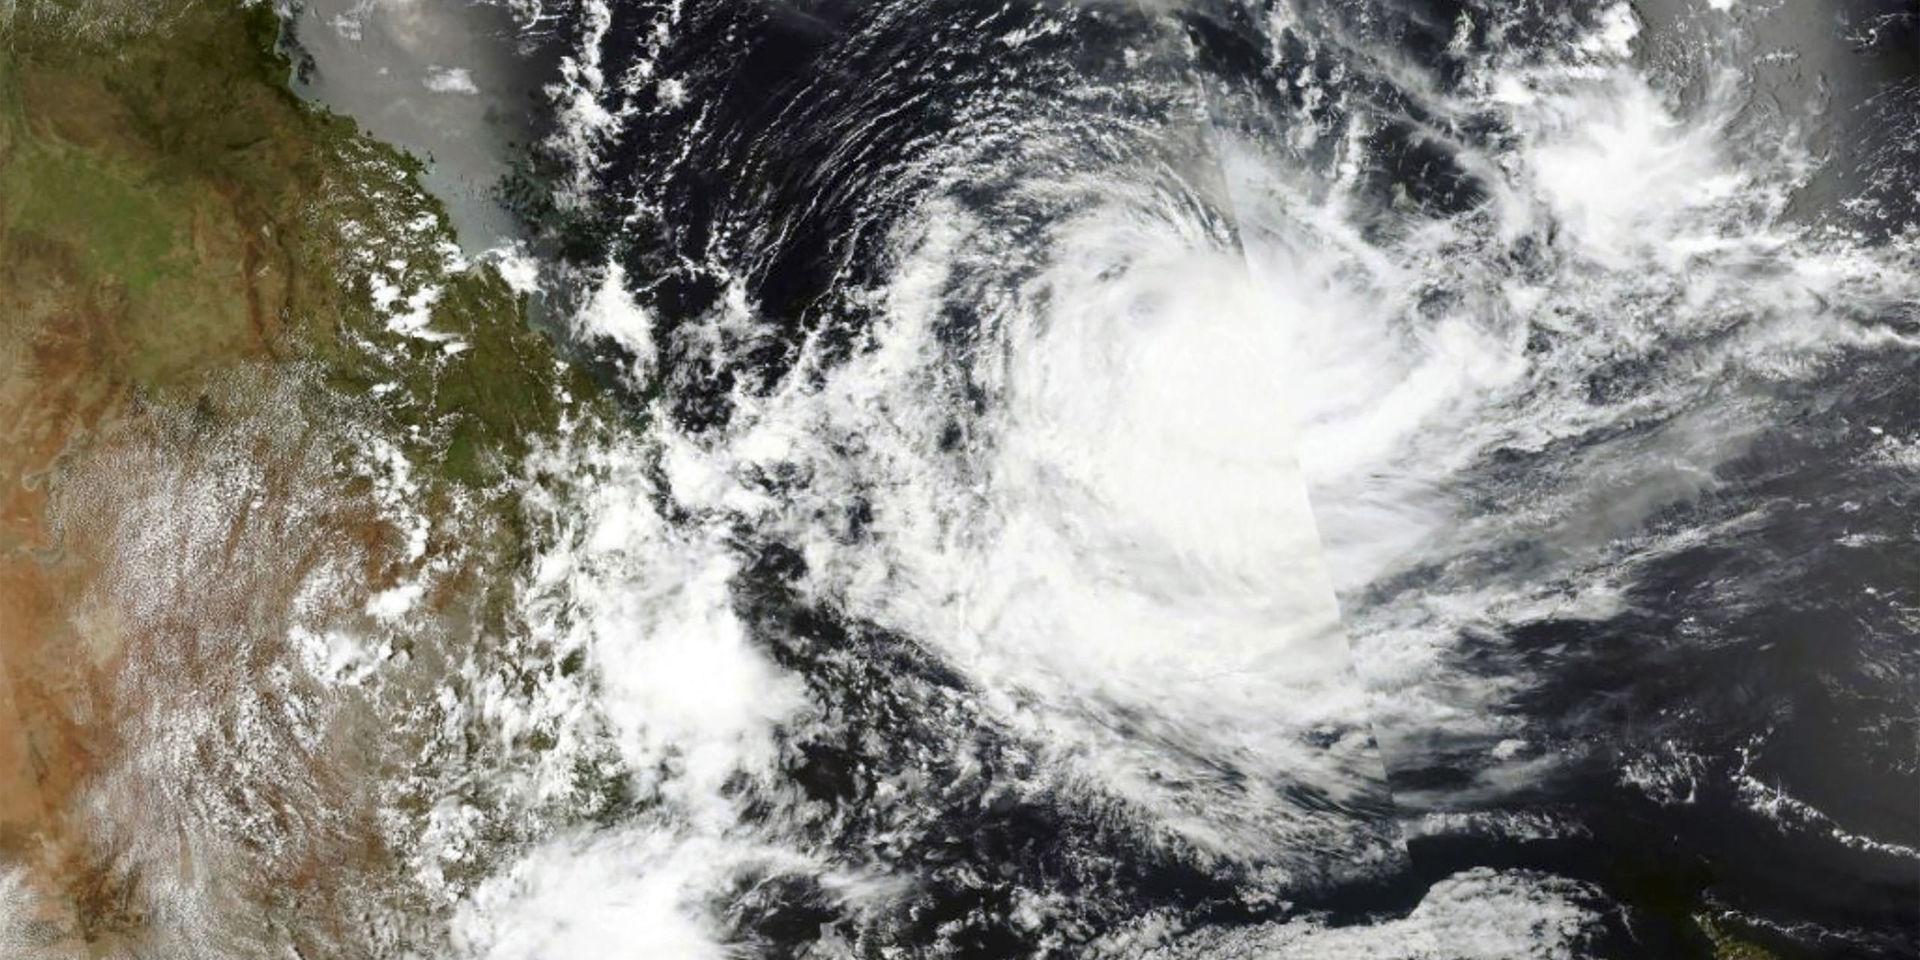 Extremvädret fortsätter – men nu av ett annat slag. Satellitbild över ovädret Uesi, som öser regn och vind mot Australiens östkust denna vecka.